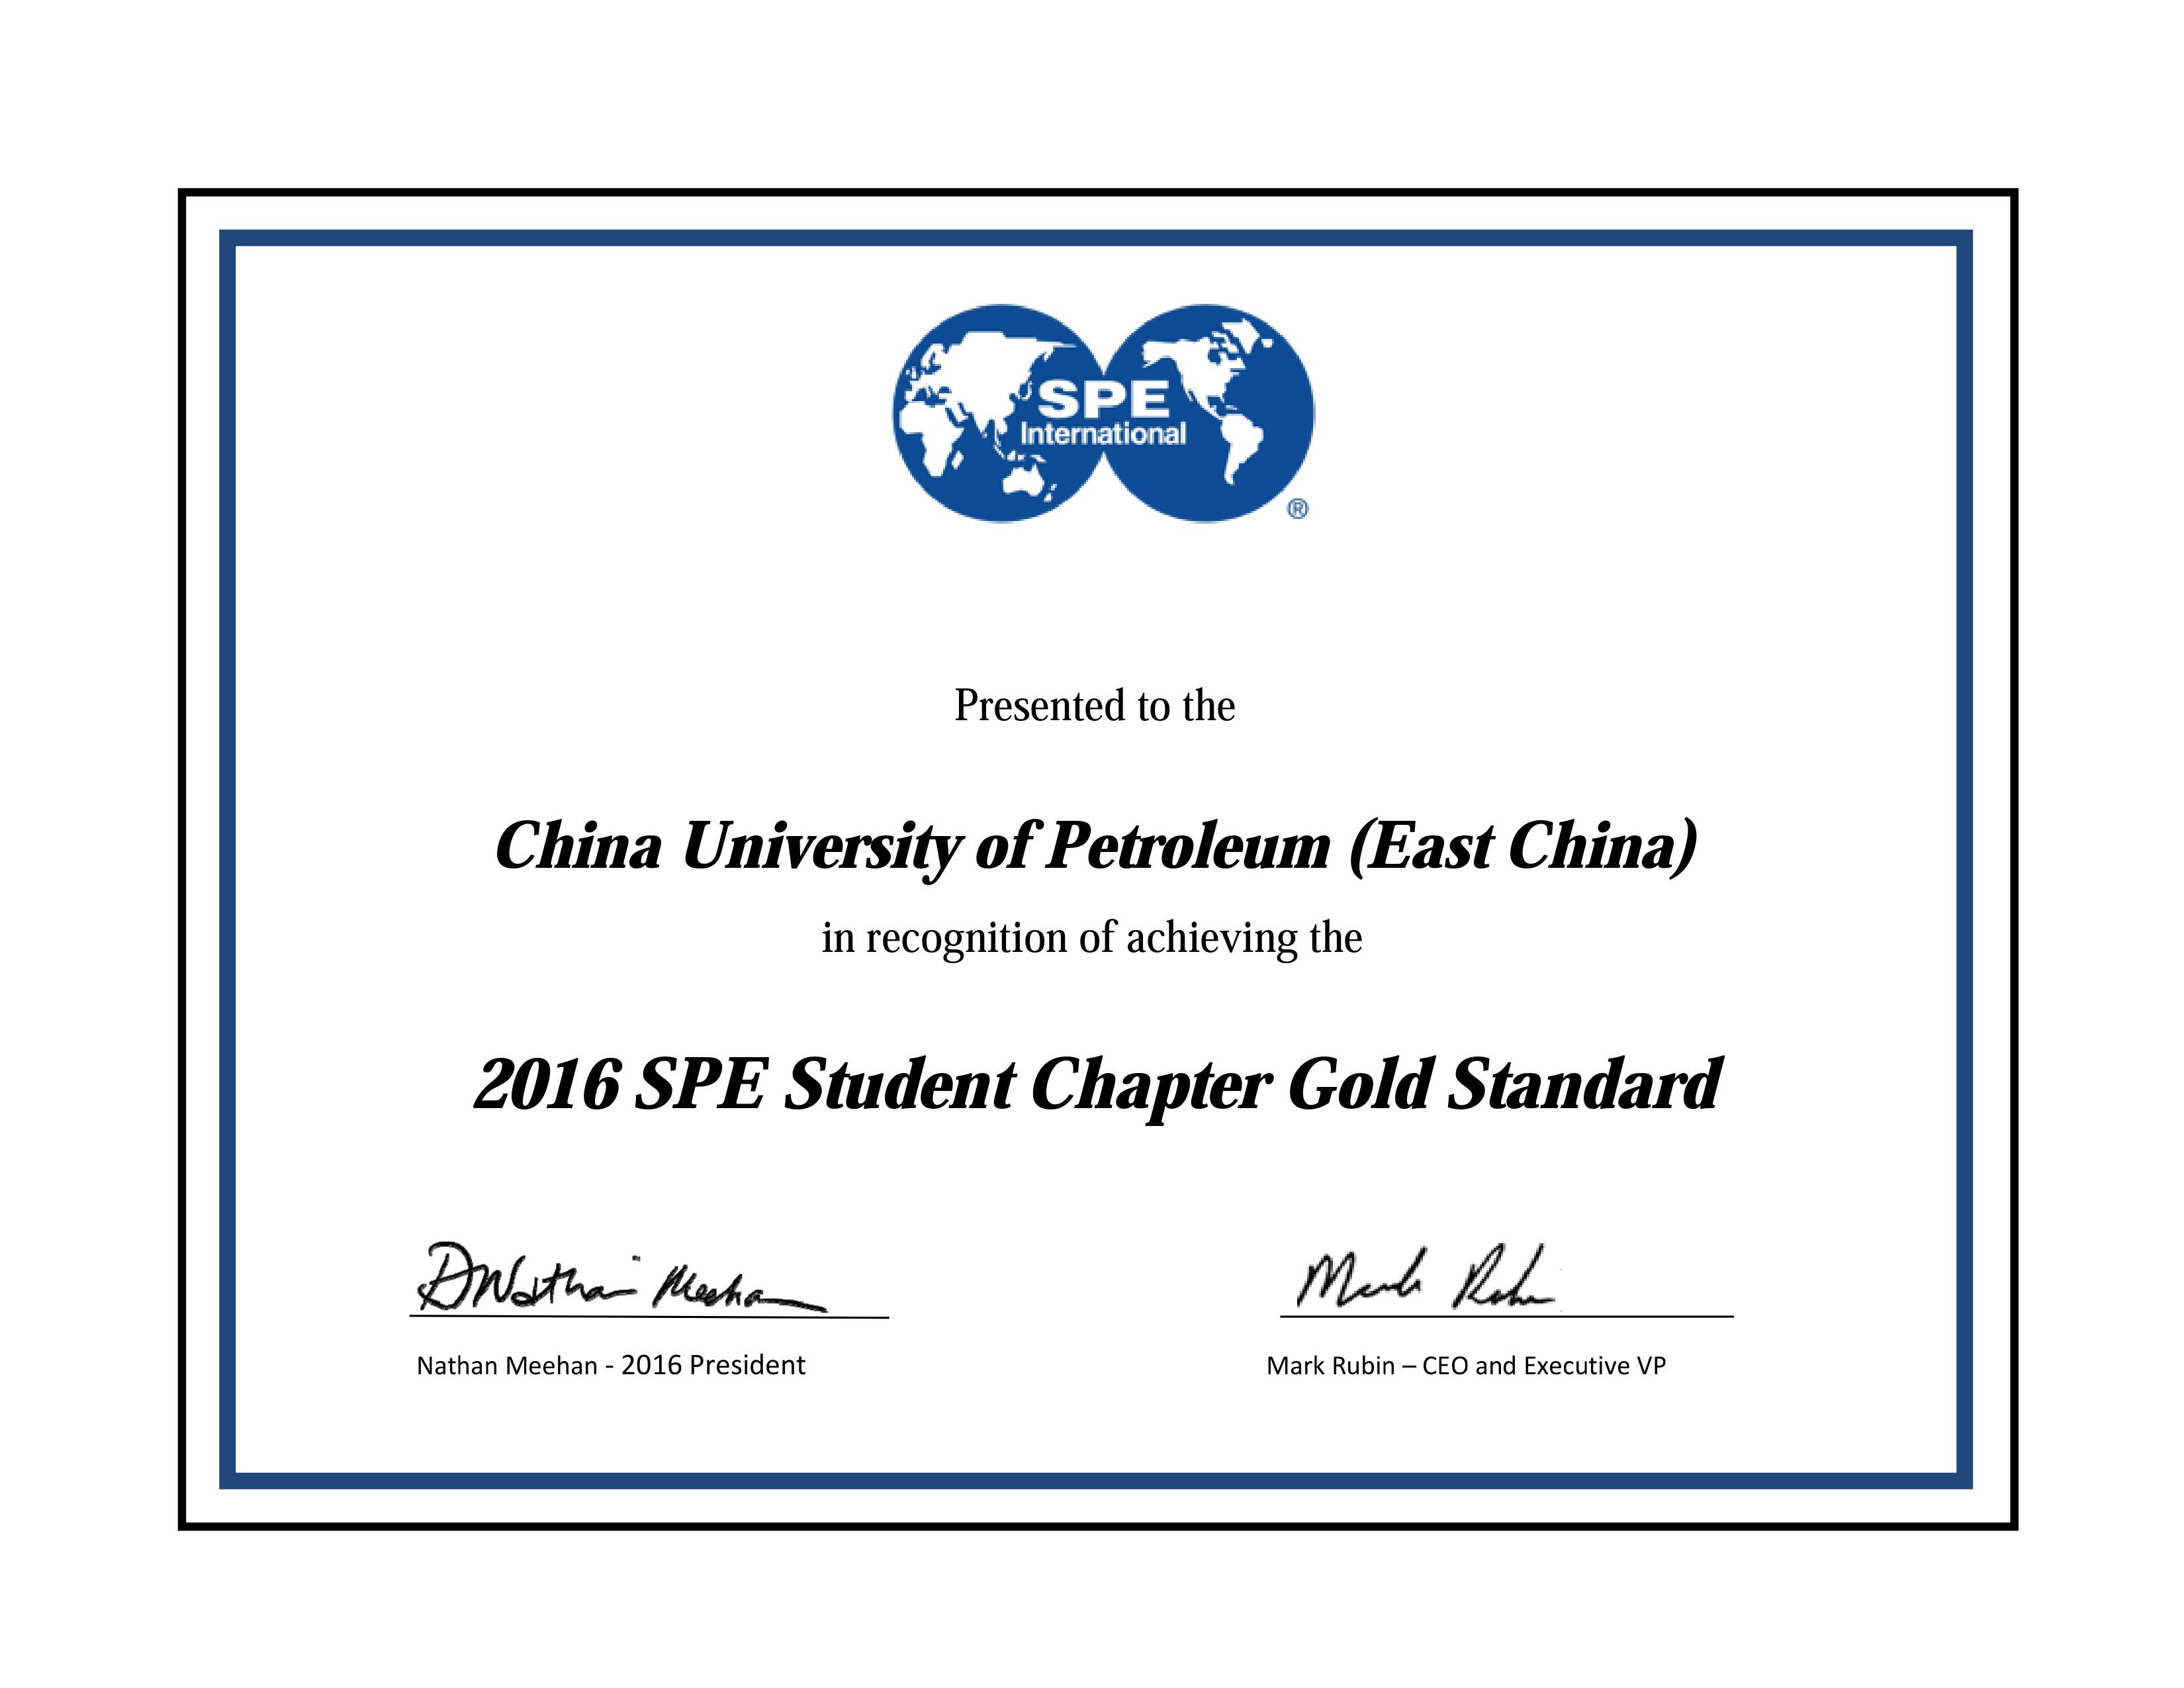 SPE总部授予石大SPE学生分会2016年度“Gold Standard”荣誉称号